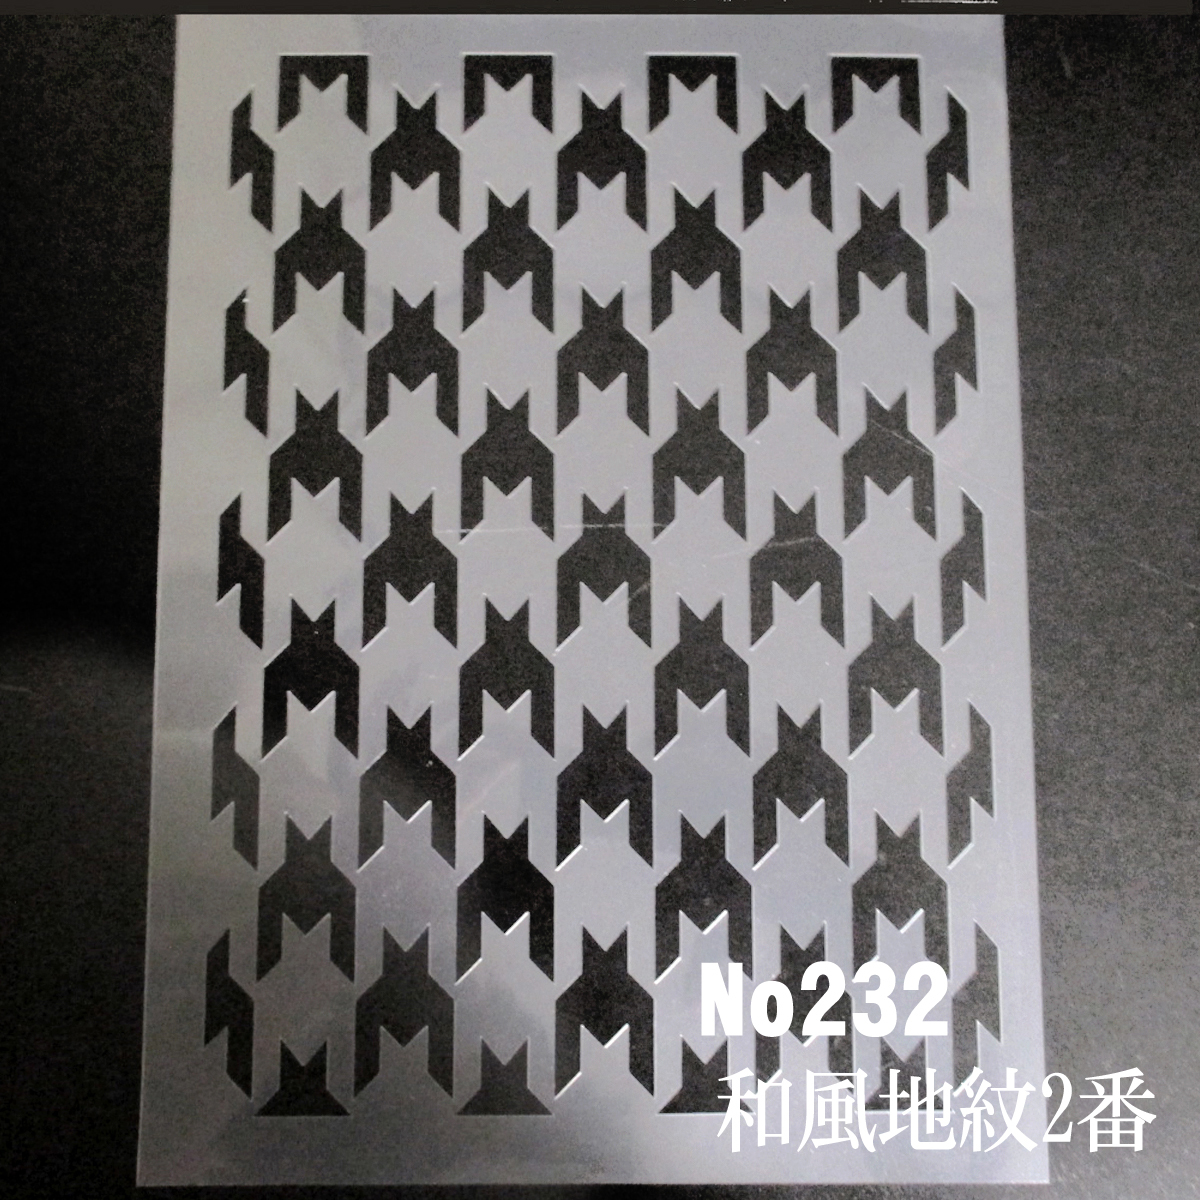 * тысяч птица рисунок японский стиль земля .2 номер stencil сиденье выкройки дизайн NO232